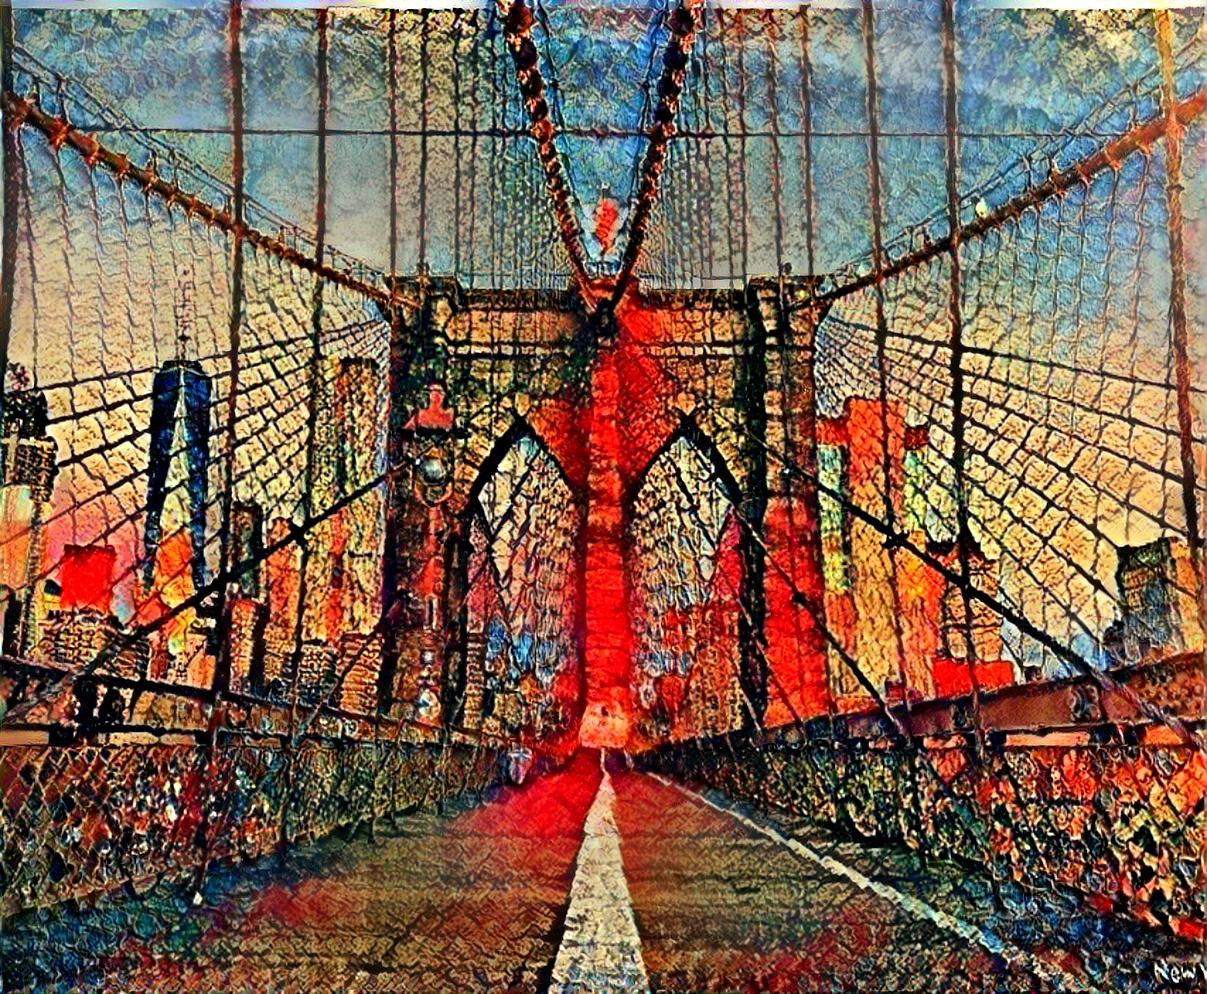 The Bridge 